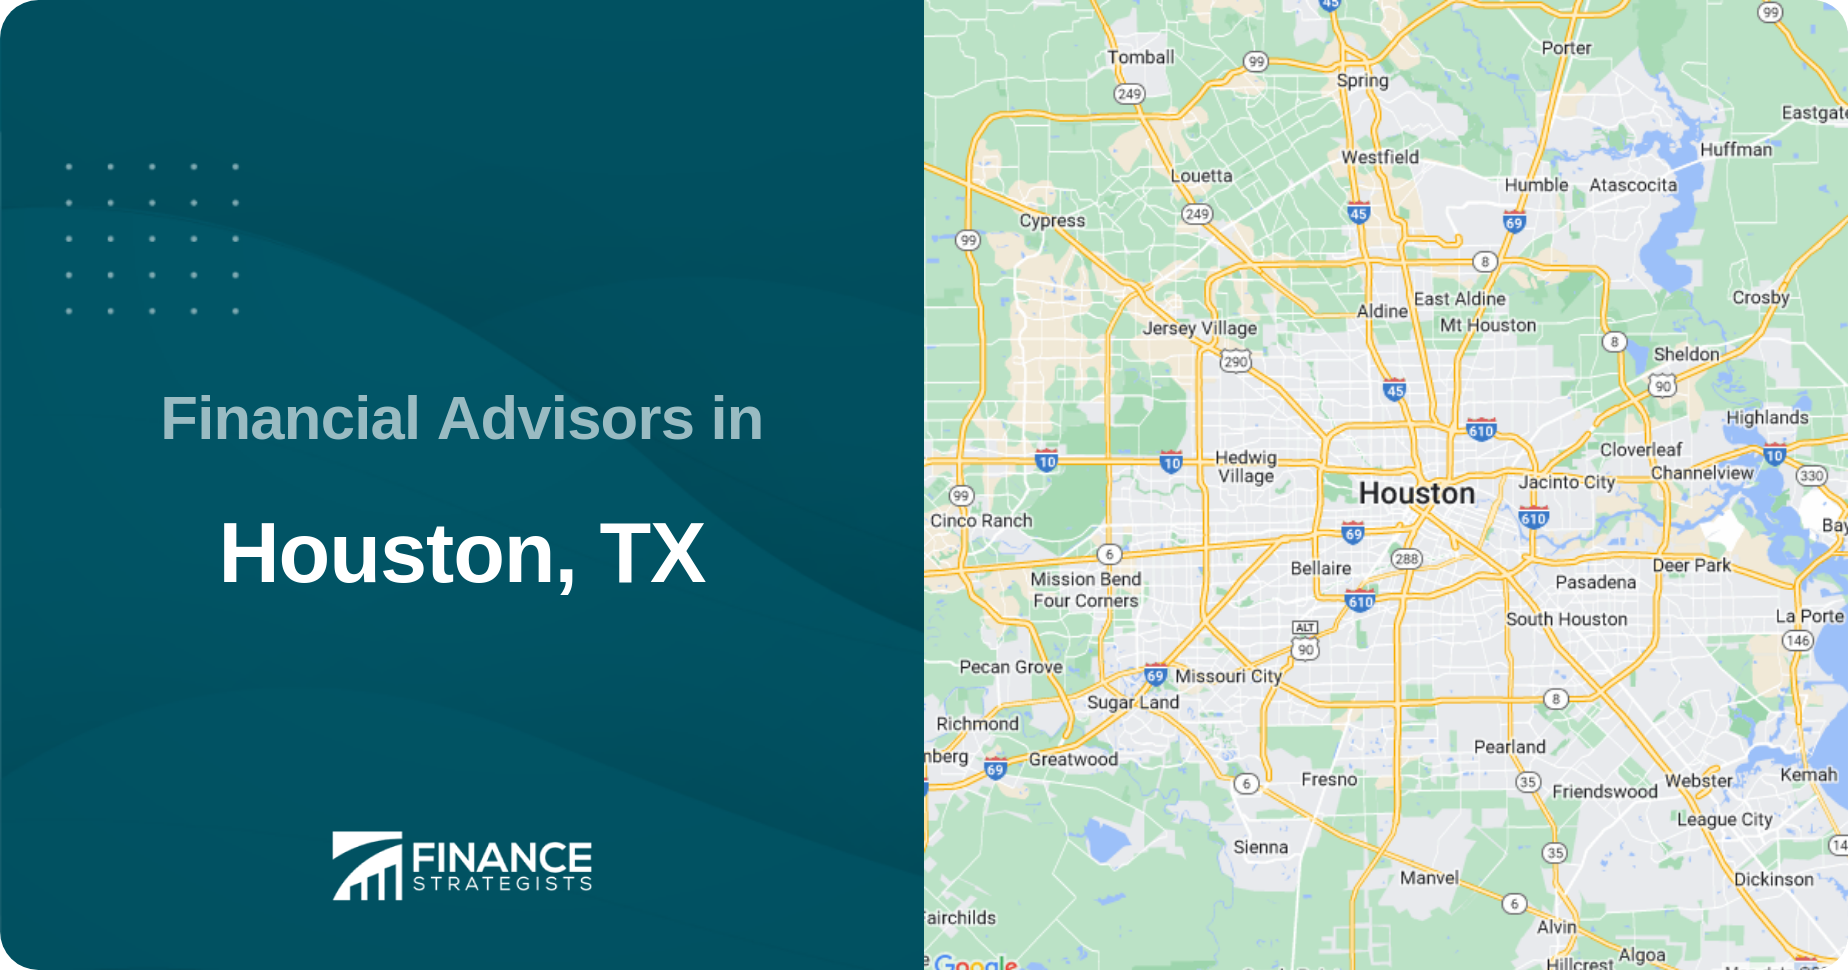 Financial Advisors in Houston, TX